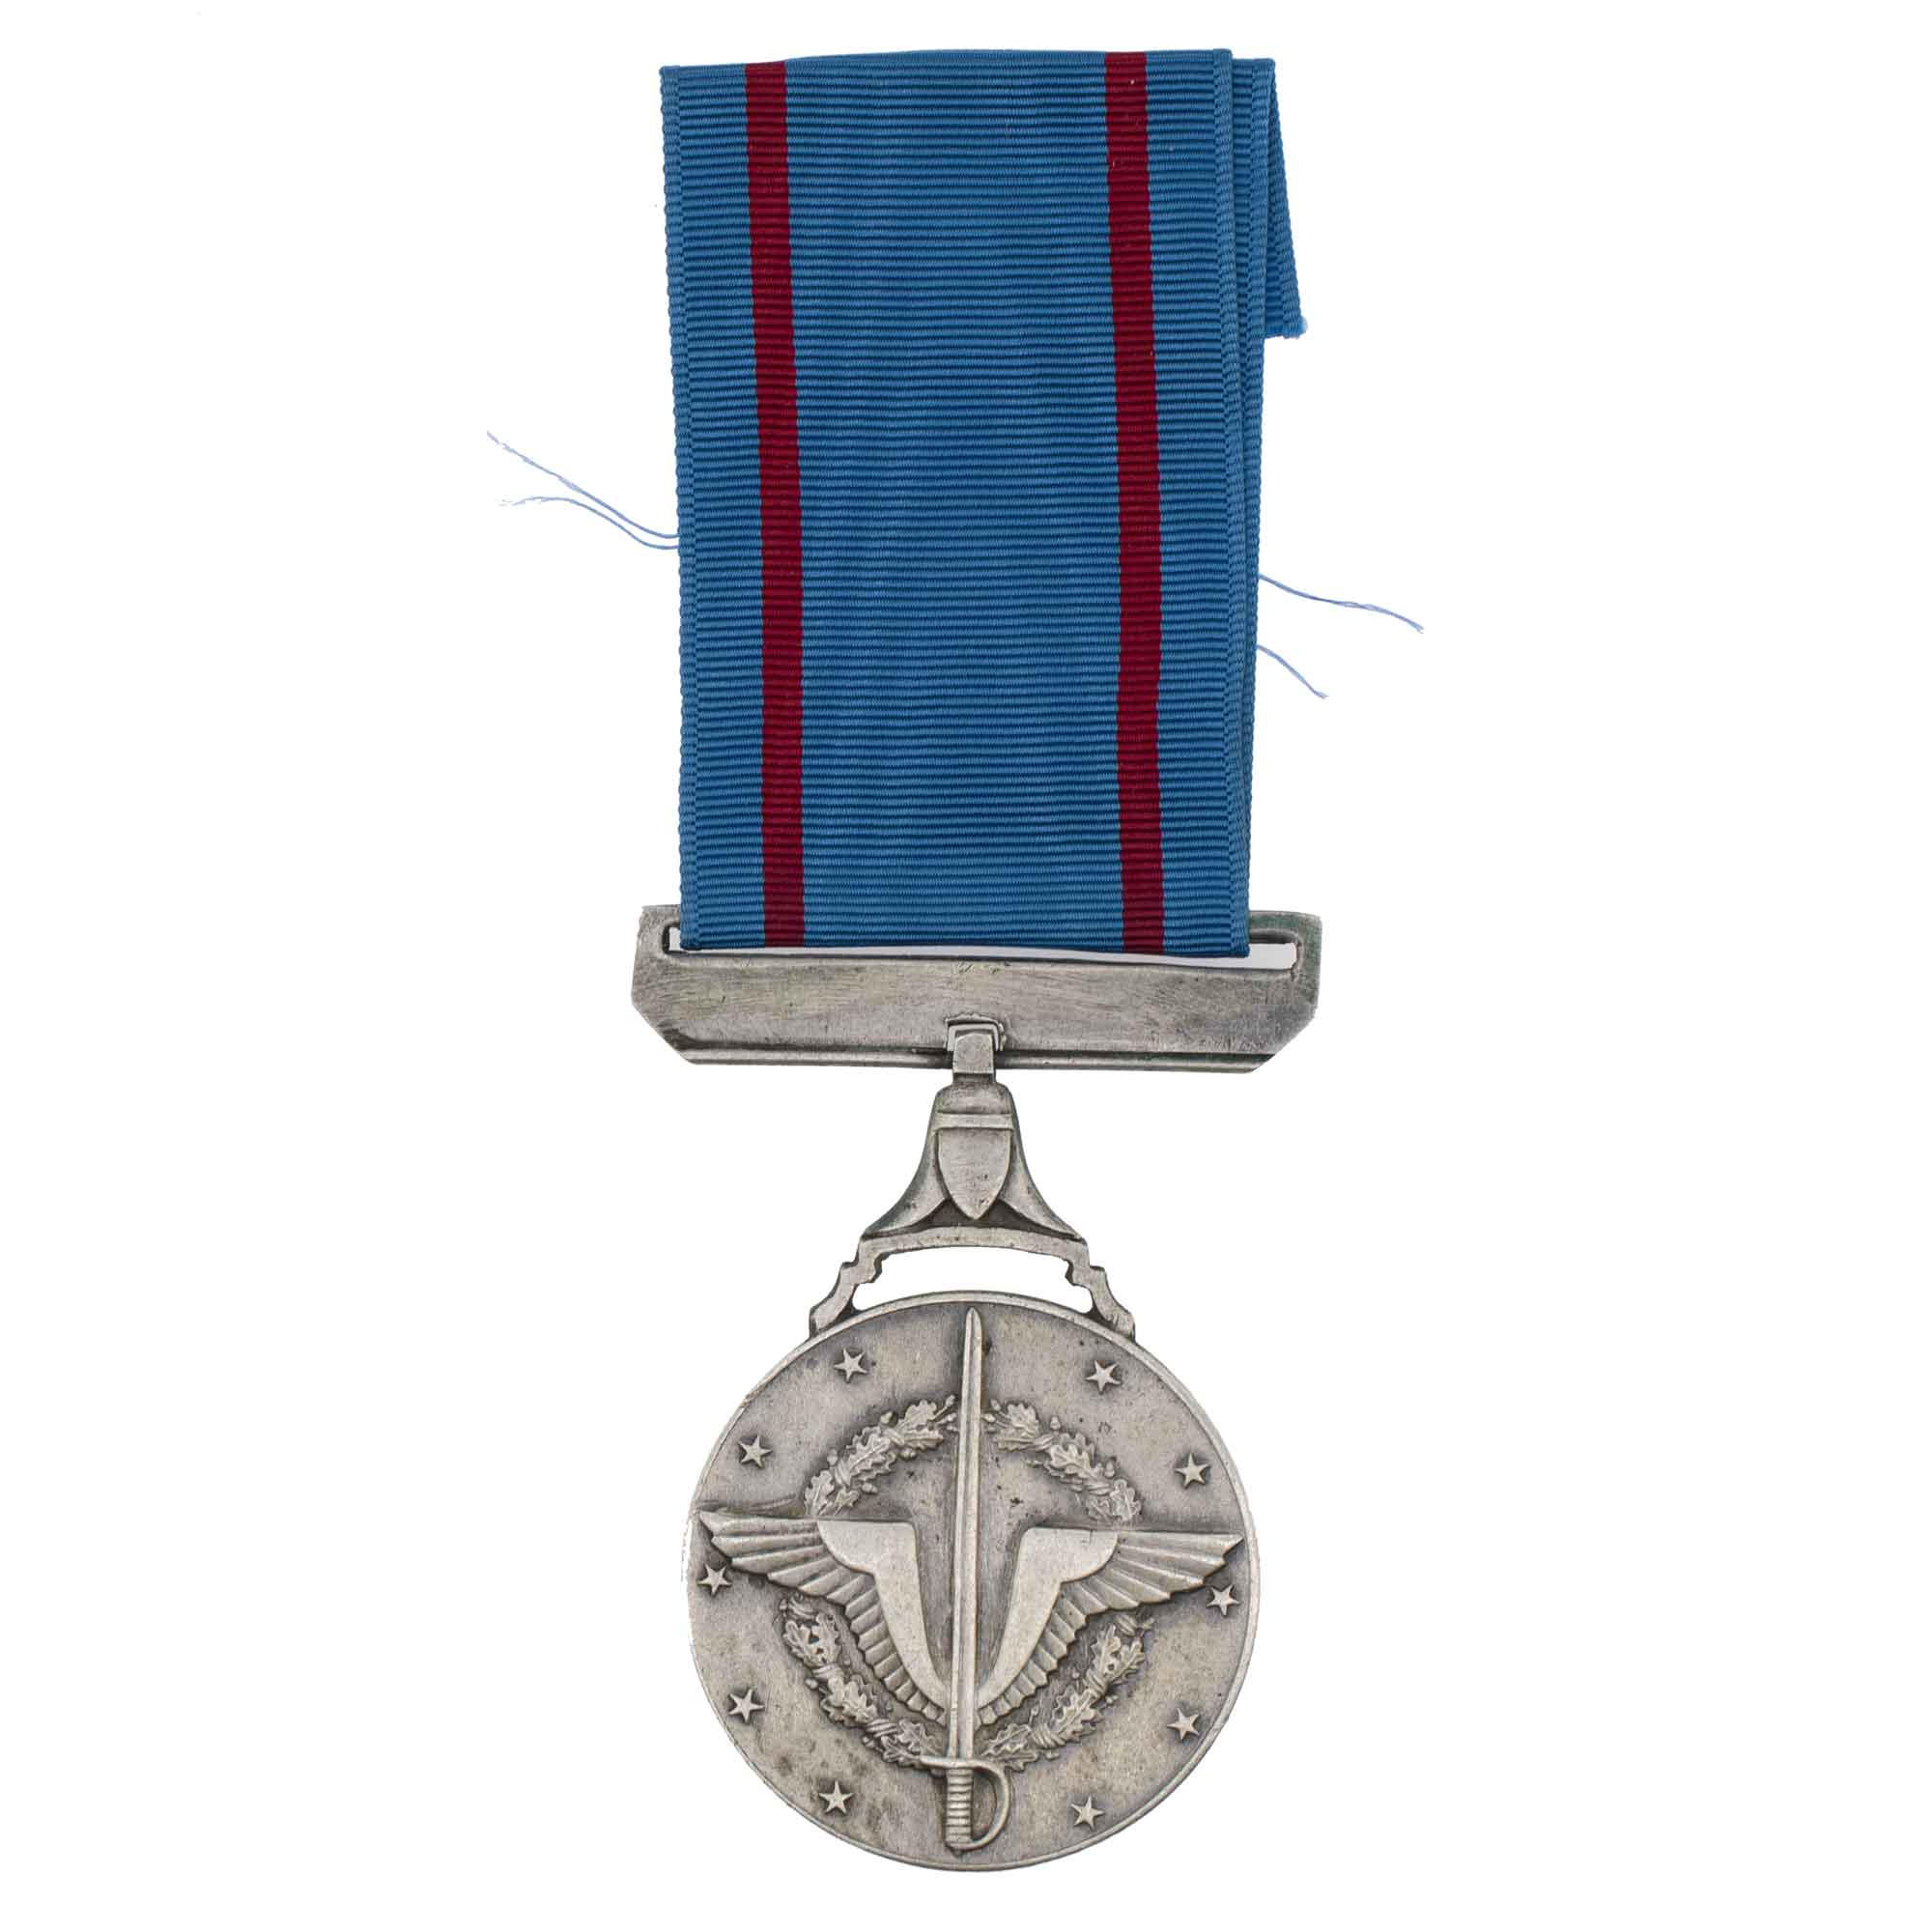 Египет. Медаль "За выполнение воинского долга" 2 степени.